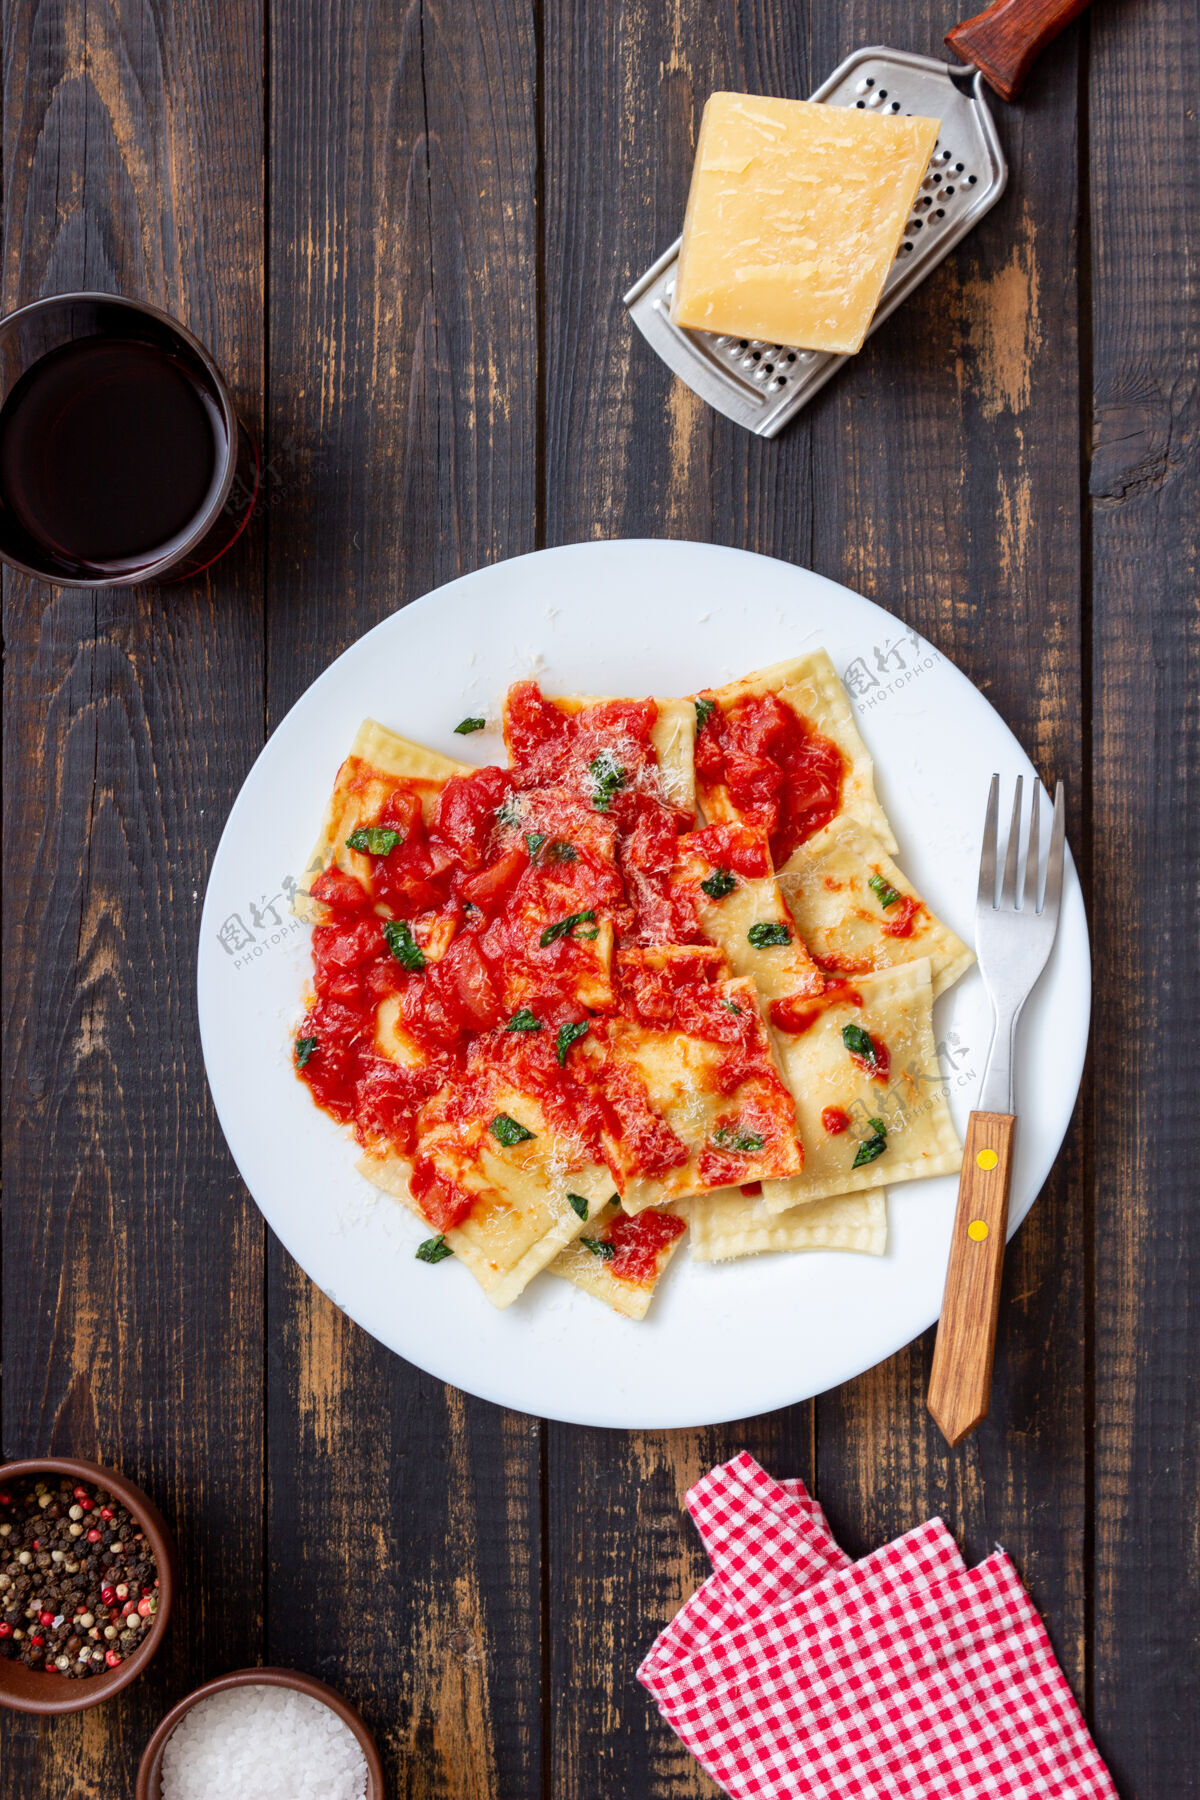 烹饪馄饨配番茄酱 菠菜和帕尔玛干酪健康饮食素食意大利料理素食素食主义者自制